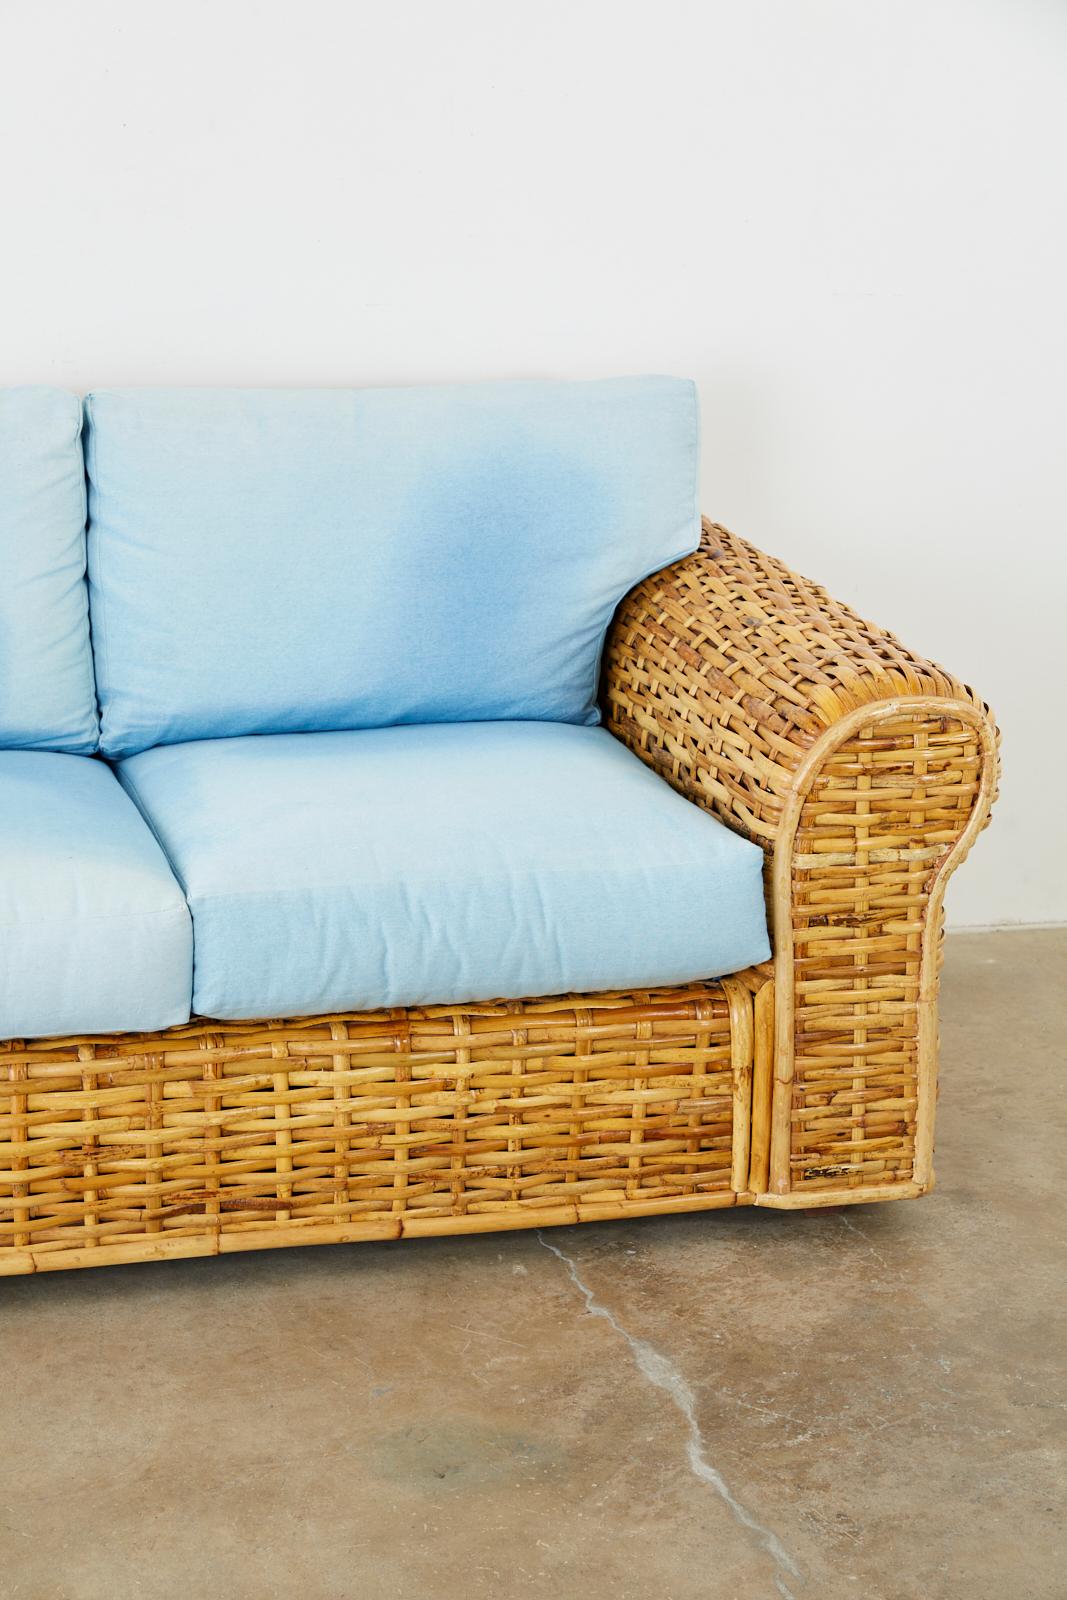 Organic Modern Ralph Lauren Woven Rattan Settee with Blue Ombre Upholstery